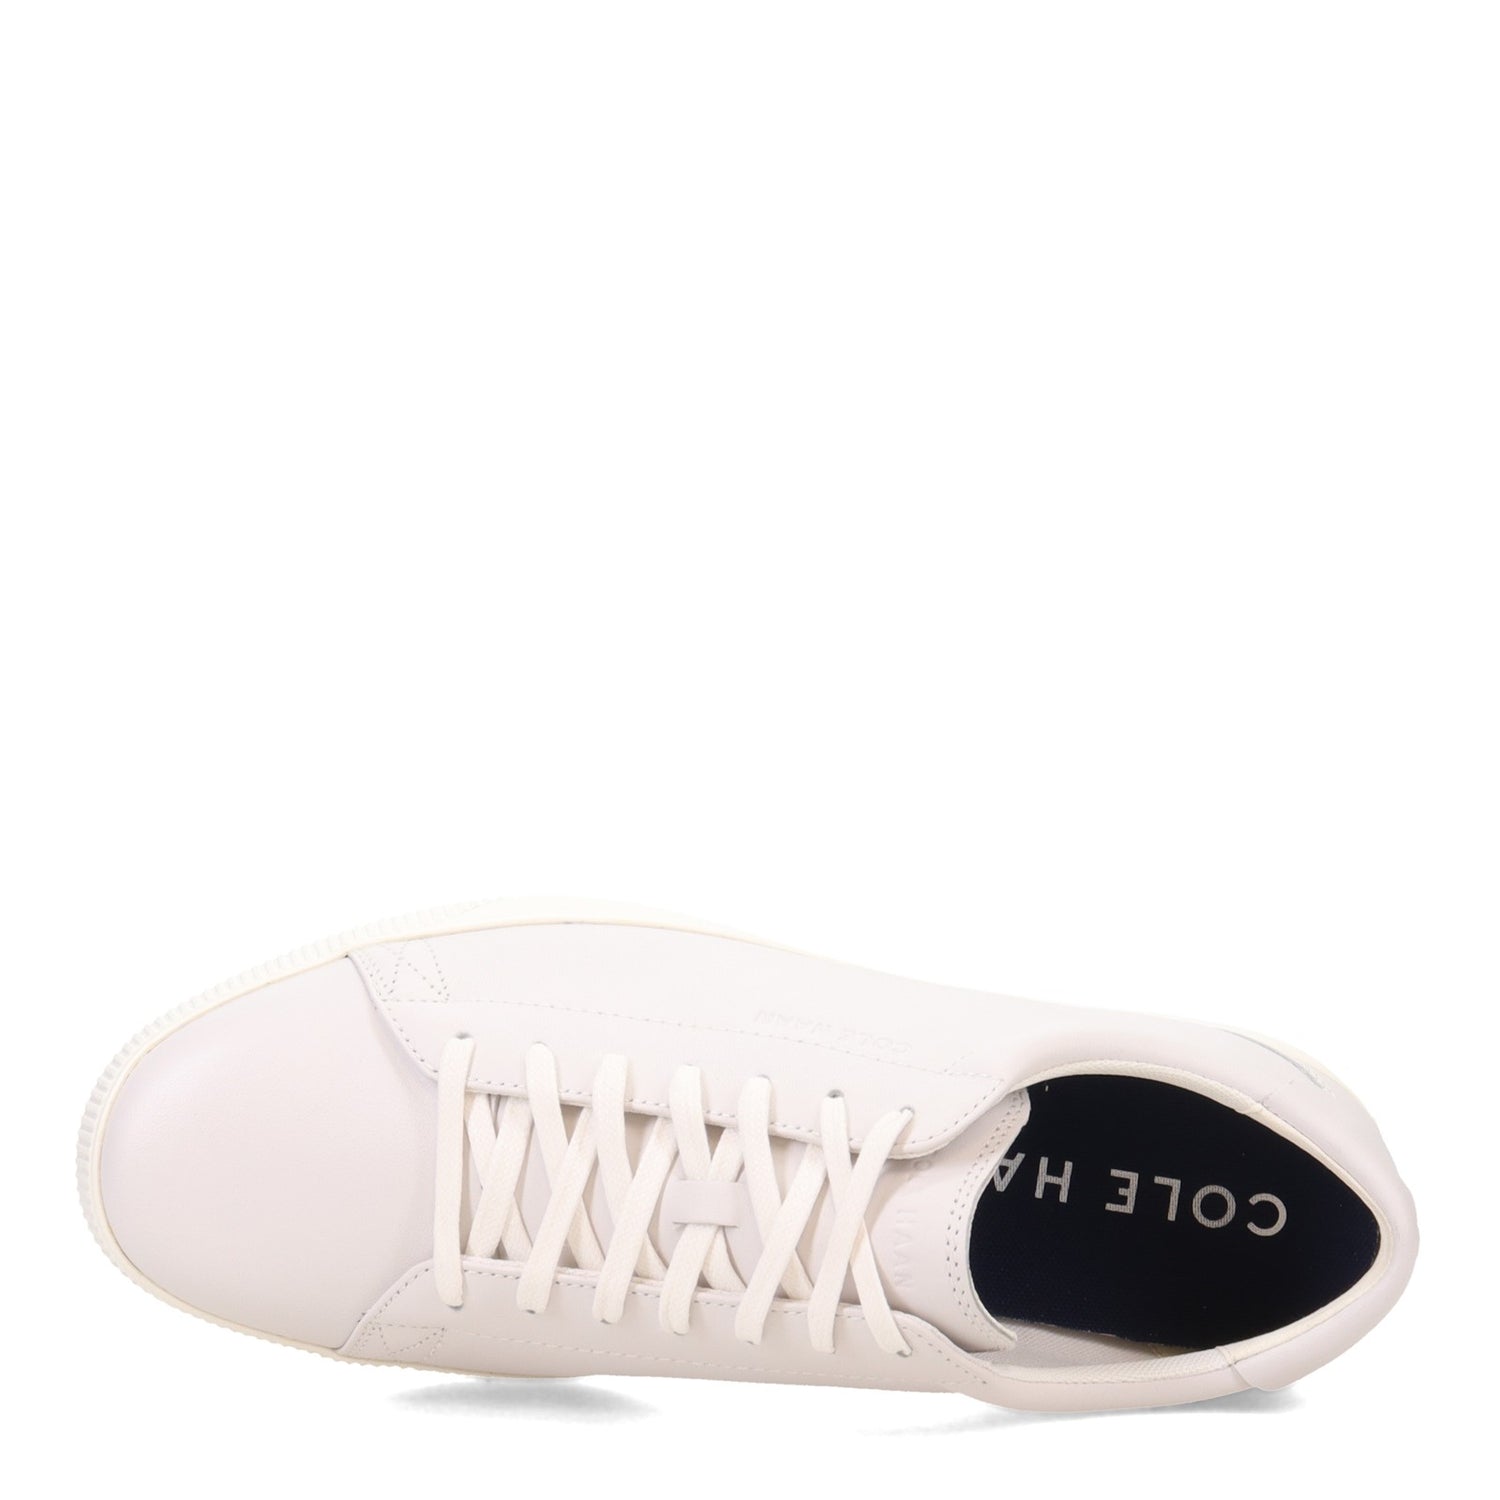 Peltz Shoes  Men's Cole Haan Nantucket 2.0 Lace-Up WHITE C33141